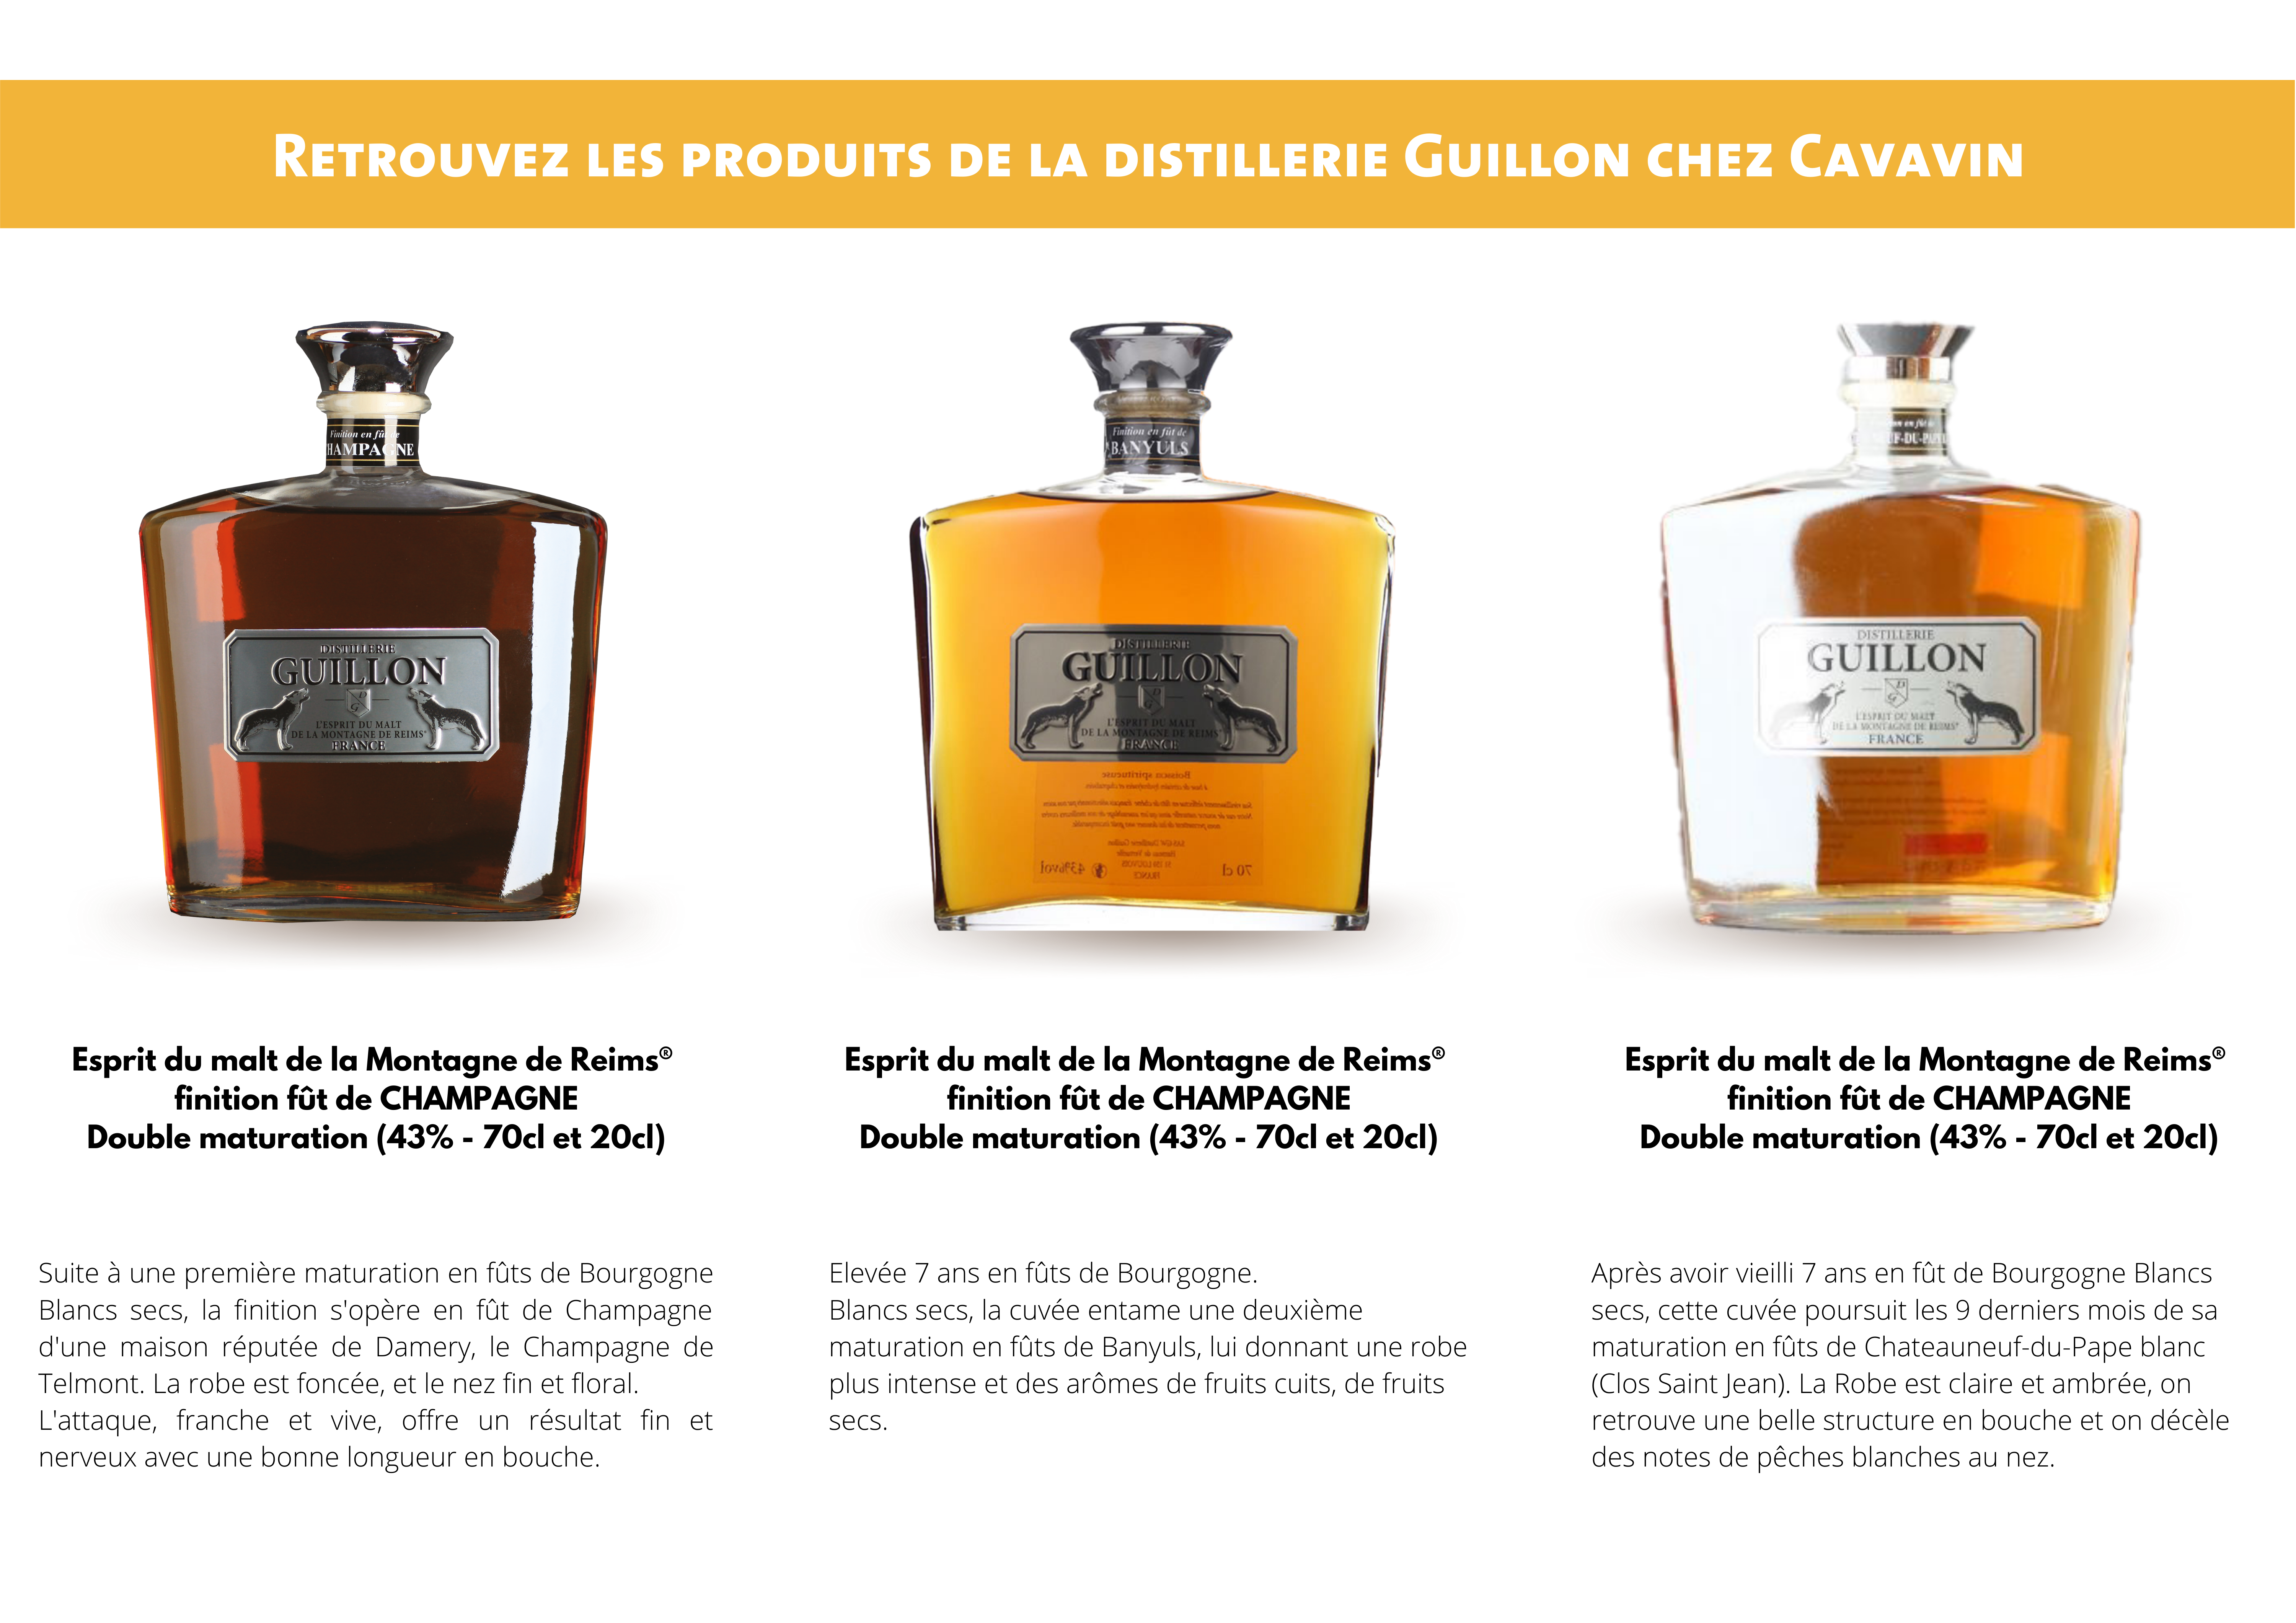 Les whiskies de la distillerie Guillon chez CAVAVIN